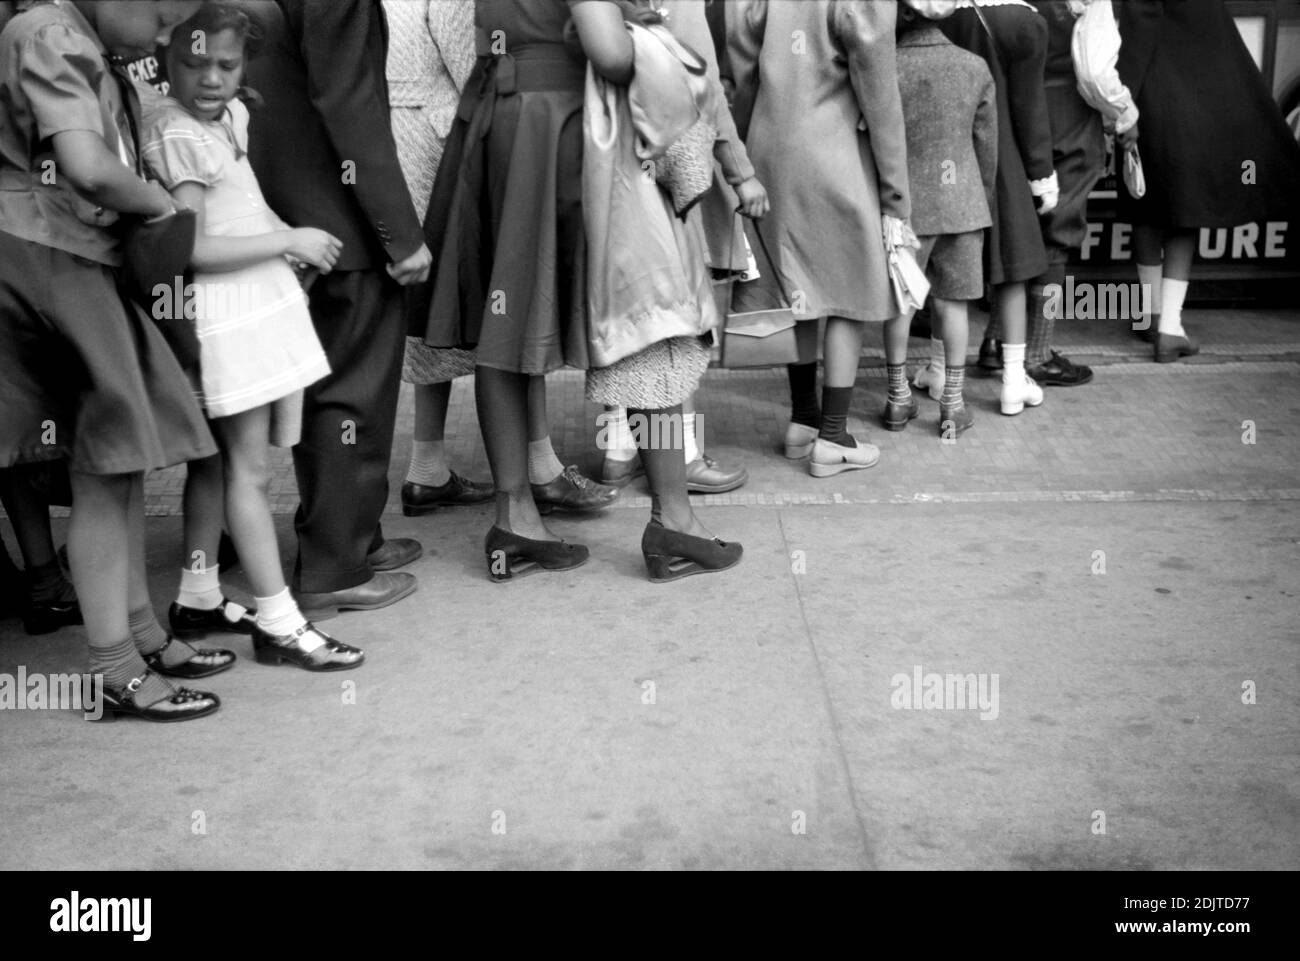 Niños frente a Moving Picture Theatre, Domingo de Pascua Matinee, Black Belt, Chicago, Illinois, EE.UU., Edwin Rosskam para la Administración de Seguridad Agrícola de EE.UU., abril de 1941 Foto de stock